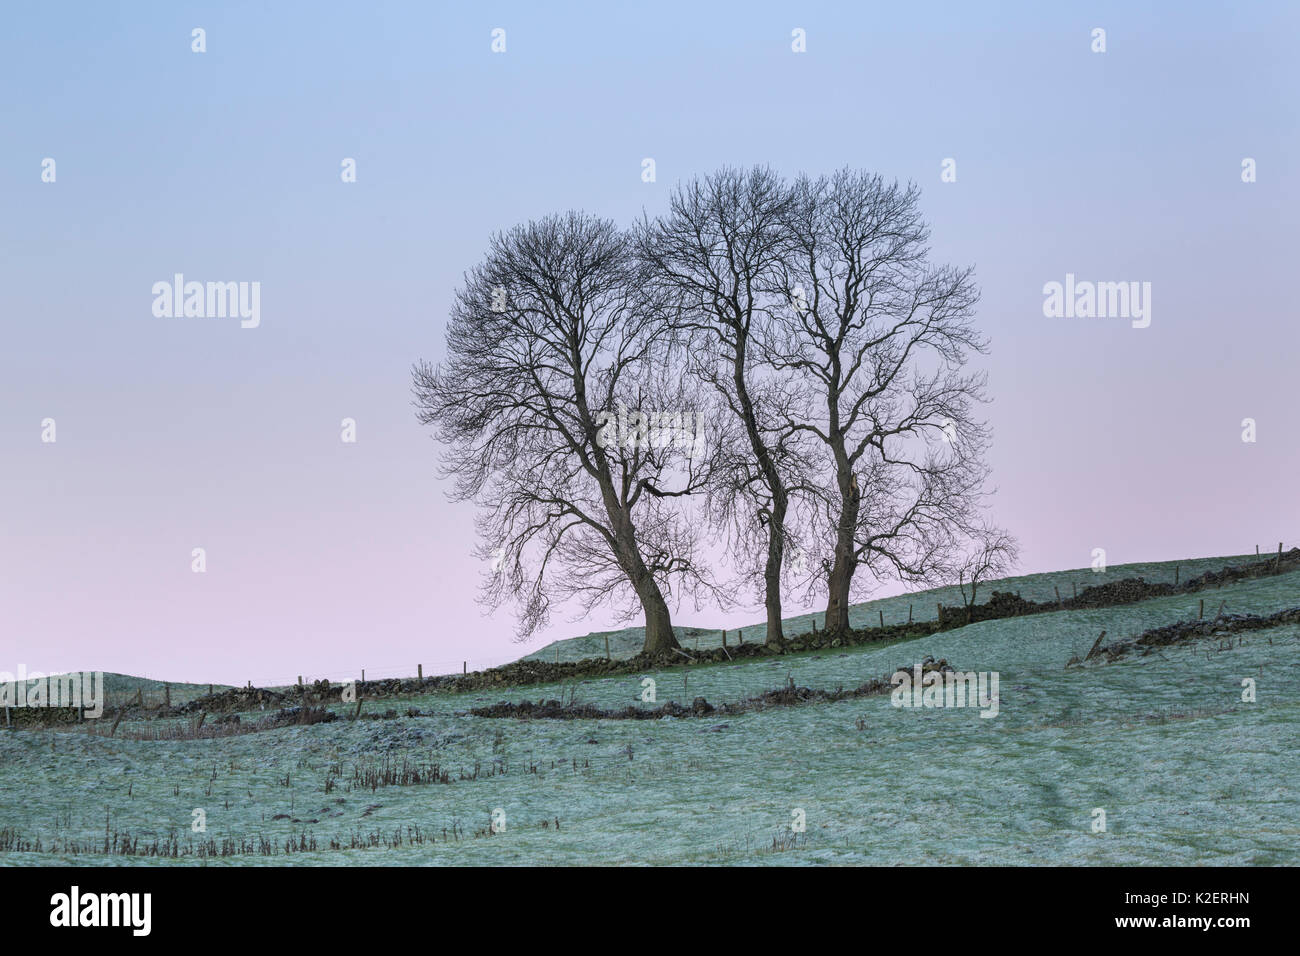 Trois frênes (Fraxinus excelsior) découpé le long d'une limite de champ sur un matin glacial. Parc national de Peak District, Derbyshire, Royaume-Uni. Décembre. Banque D'Images